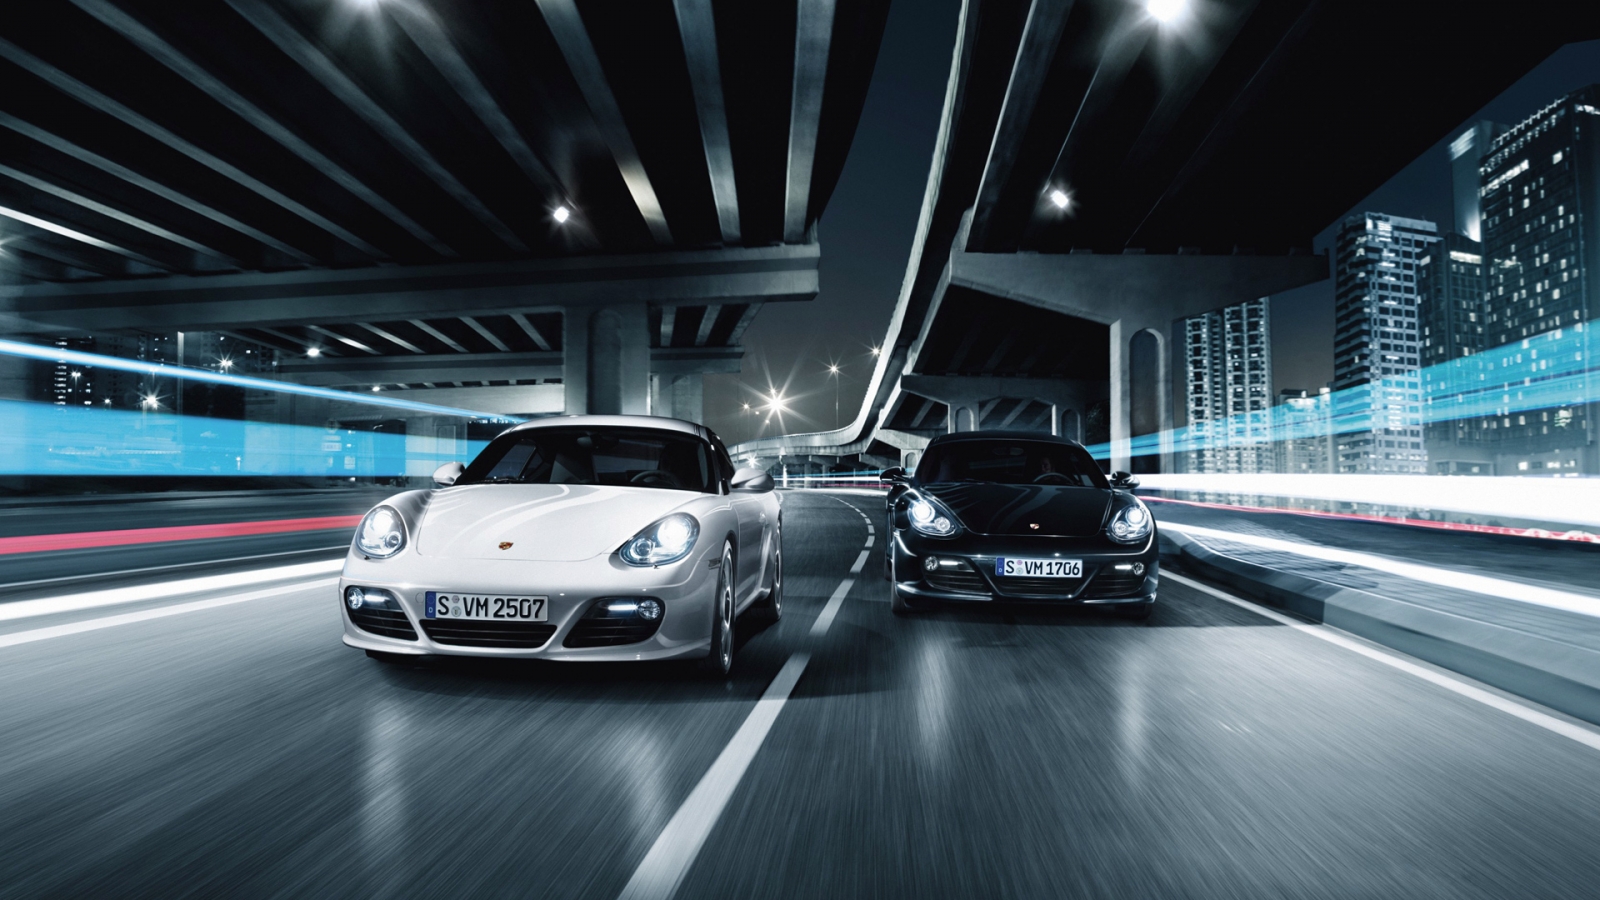 Porsche 911 GT2 Race for 1600 x 900 HDTV resolution